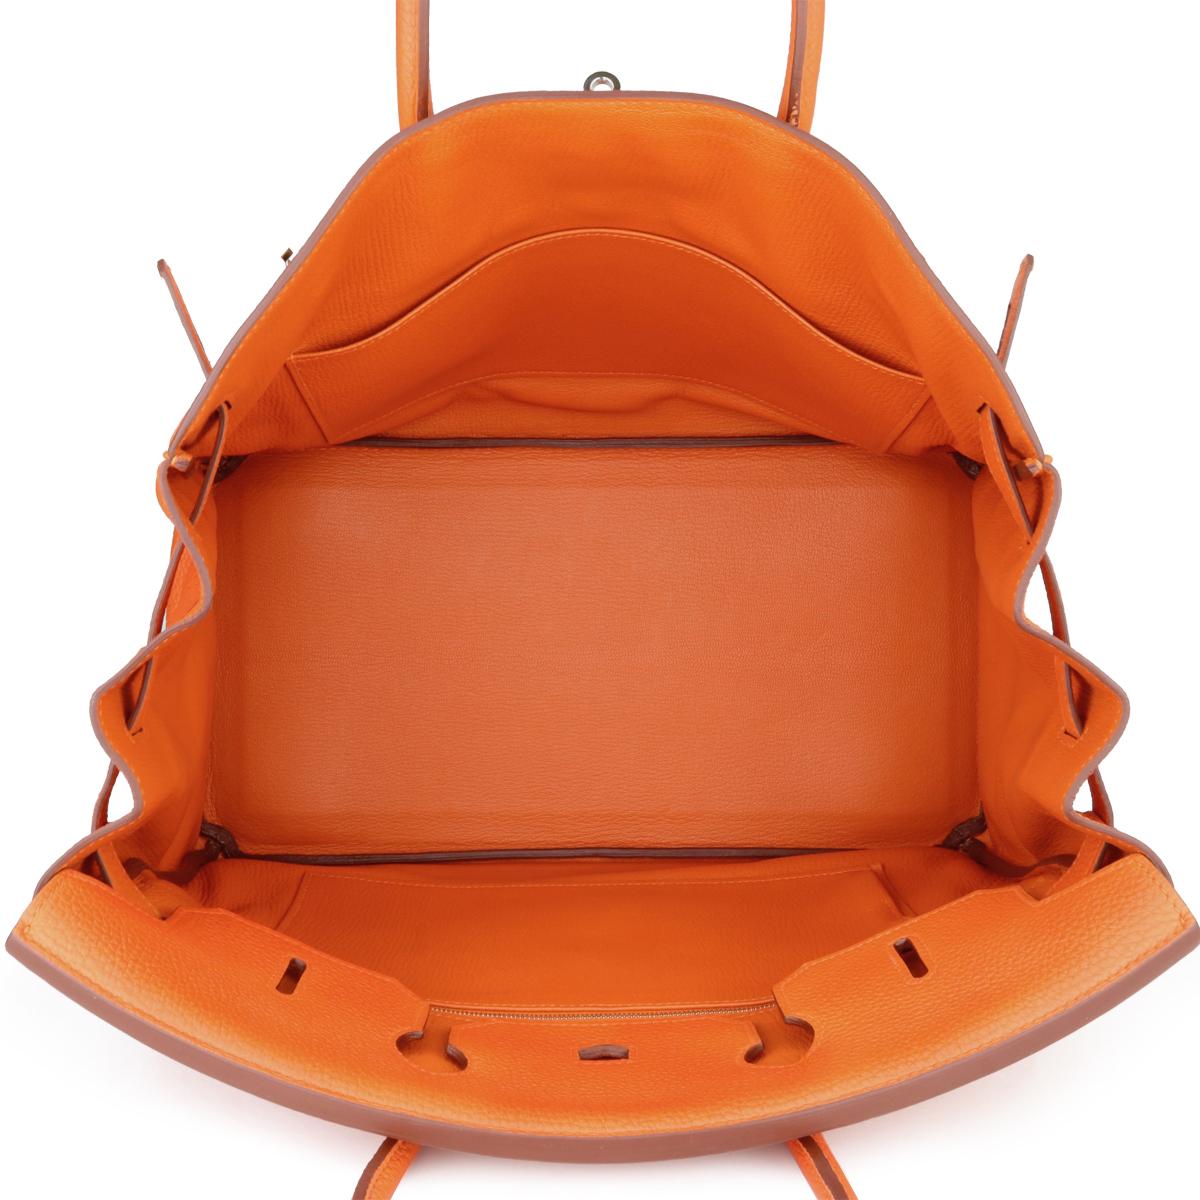 Hermès Birkin Bag 35cm Orange Togo Leather with Palladium Hardware Stamp M 2009 8